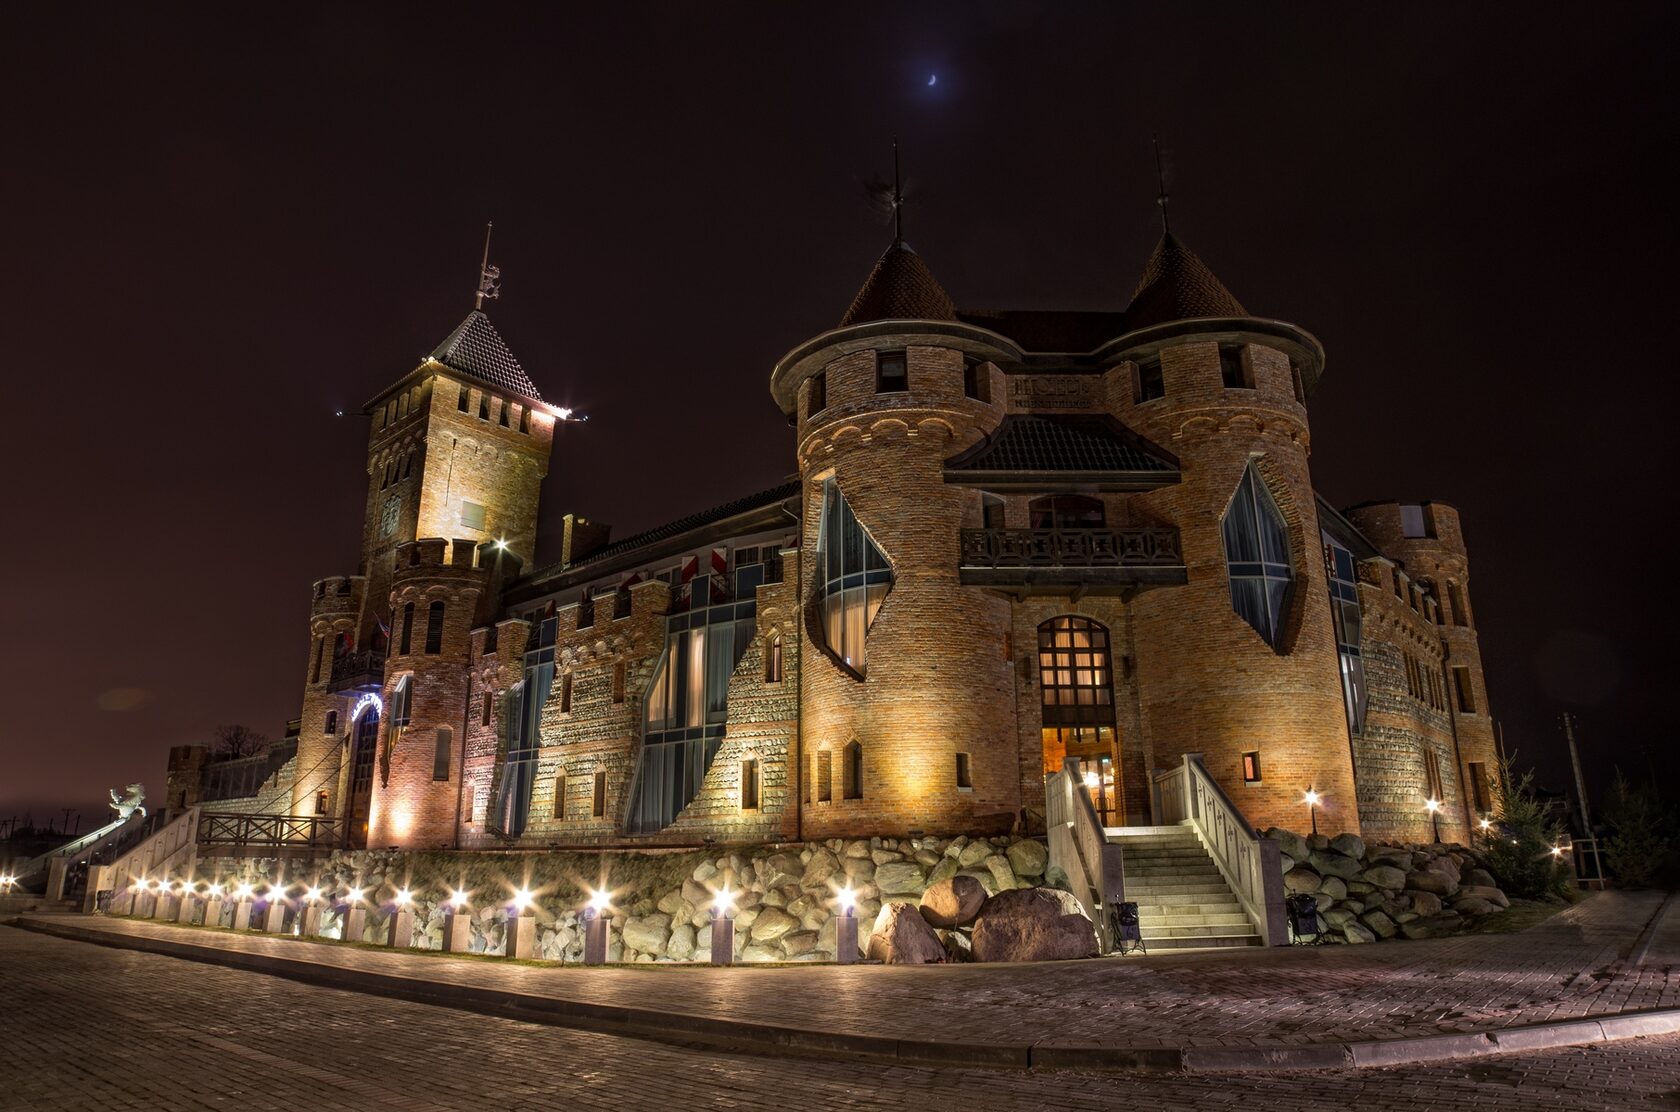 Орловка замок Нессельбек